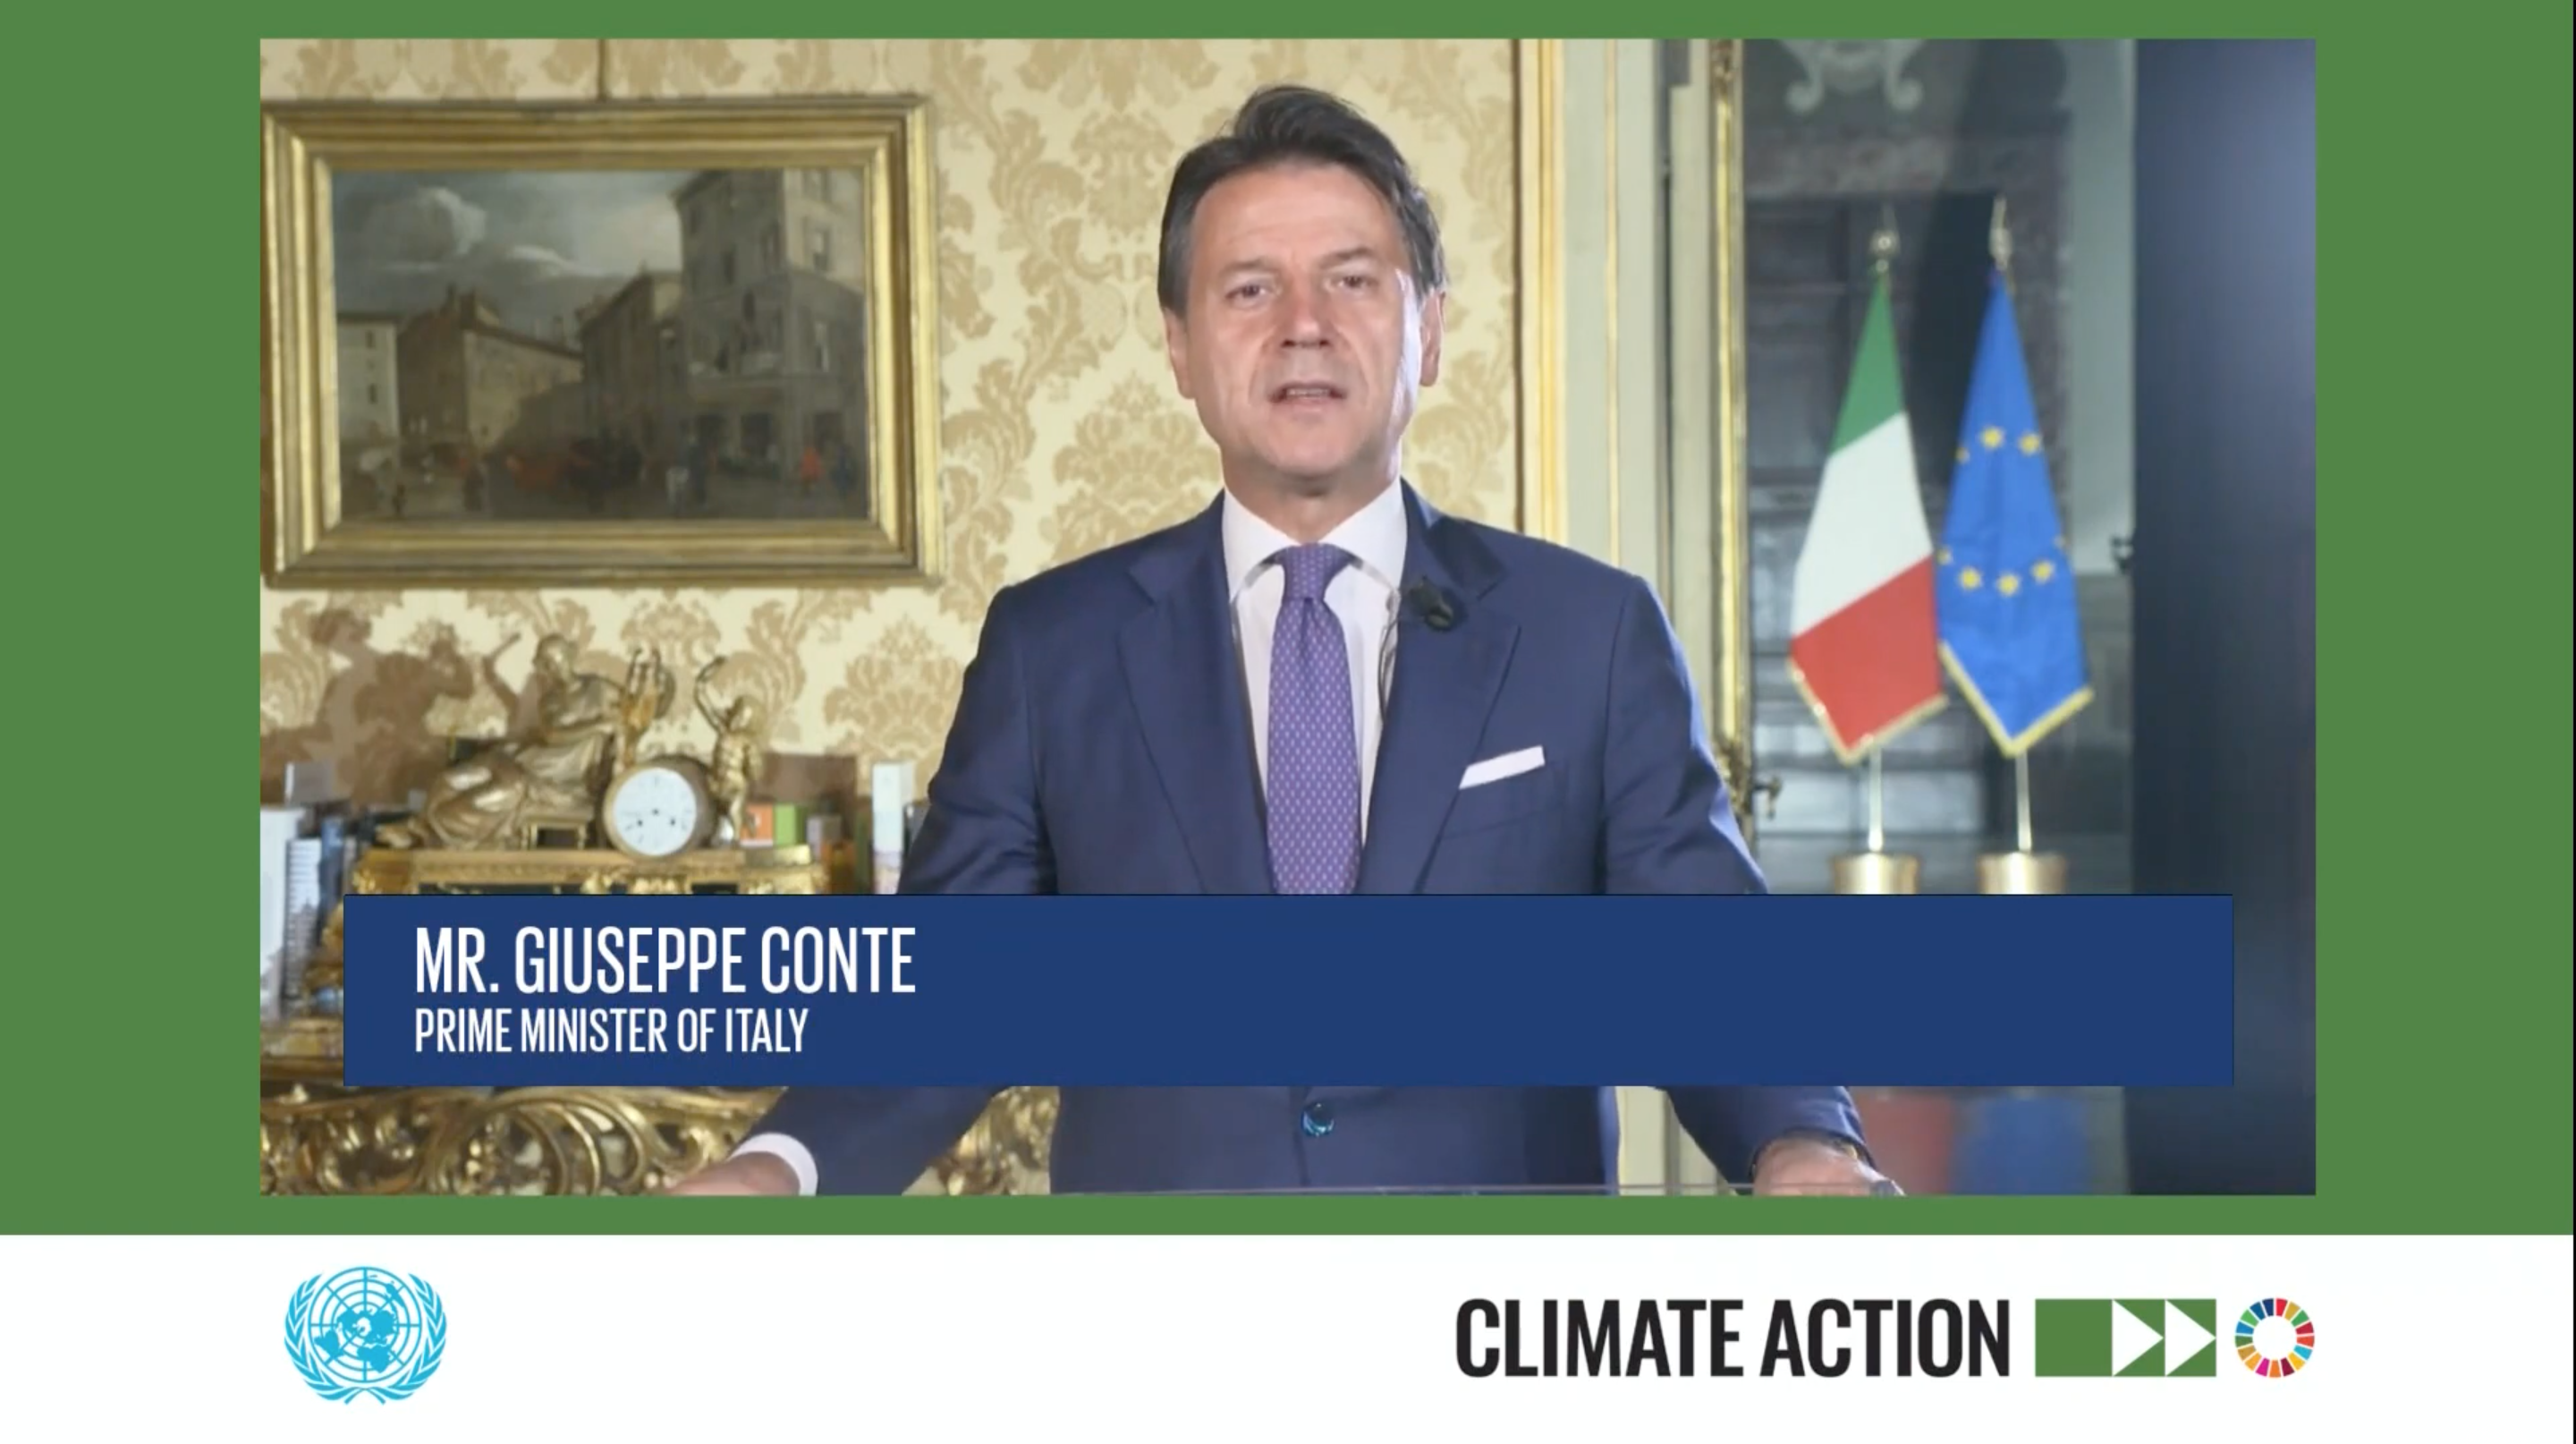 climate-action-conte-onu-assemblea-generale-clima